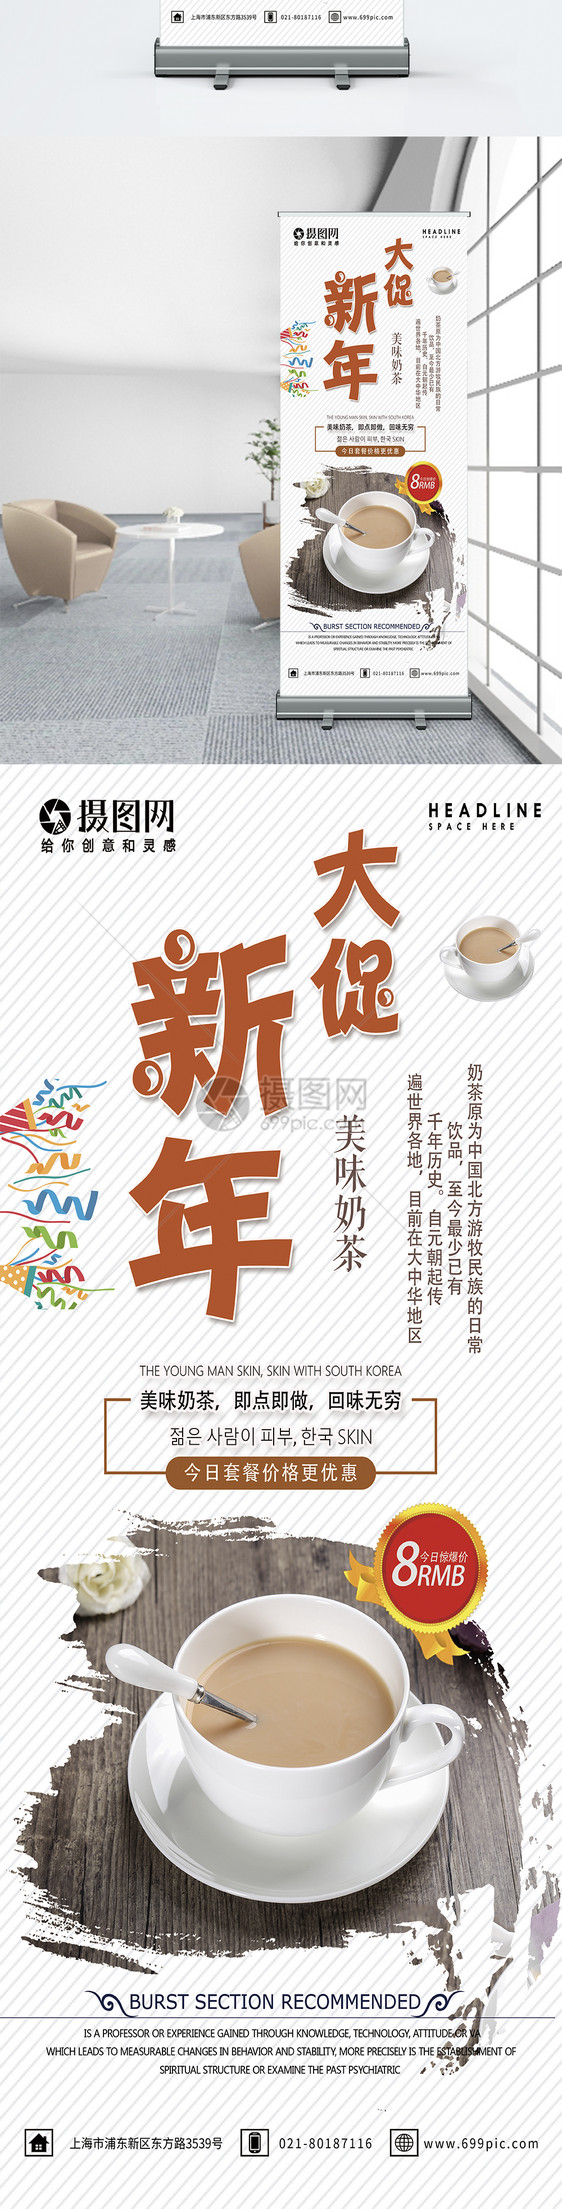 简约大气新年大促美味奶茶饮品店活动促销宣传X展架易拉宝图片